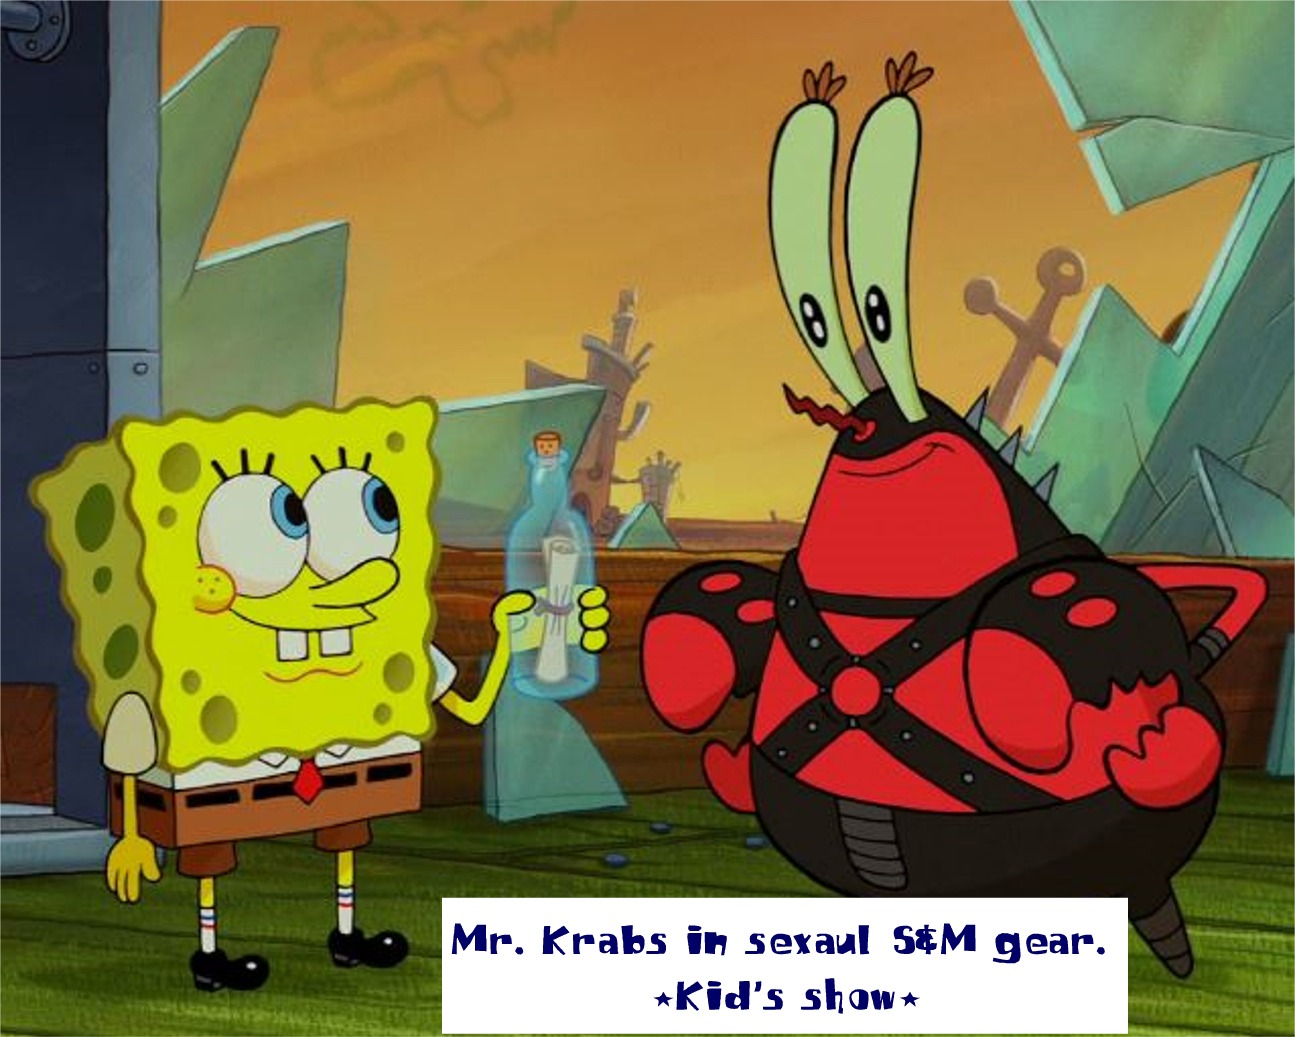 Mr. Krabs in sexaul S&M gear. Kid's shown Mr. Krabs in seraul sem gear.